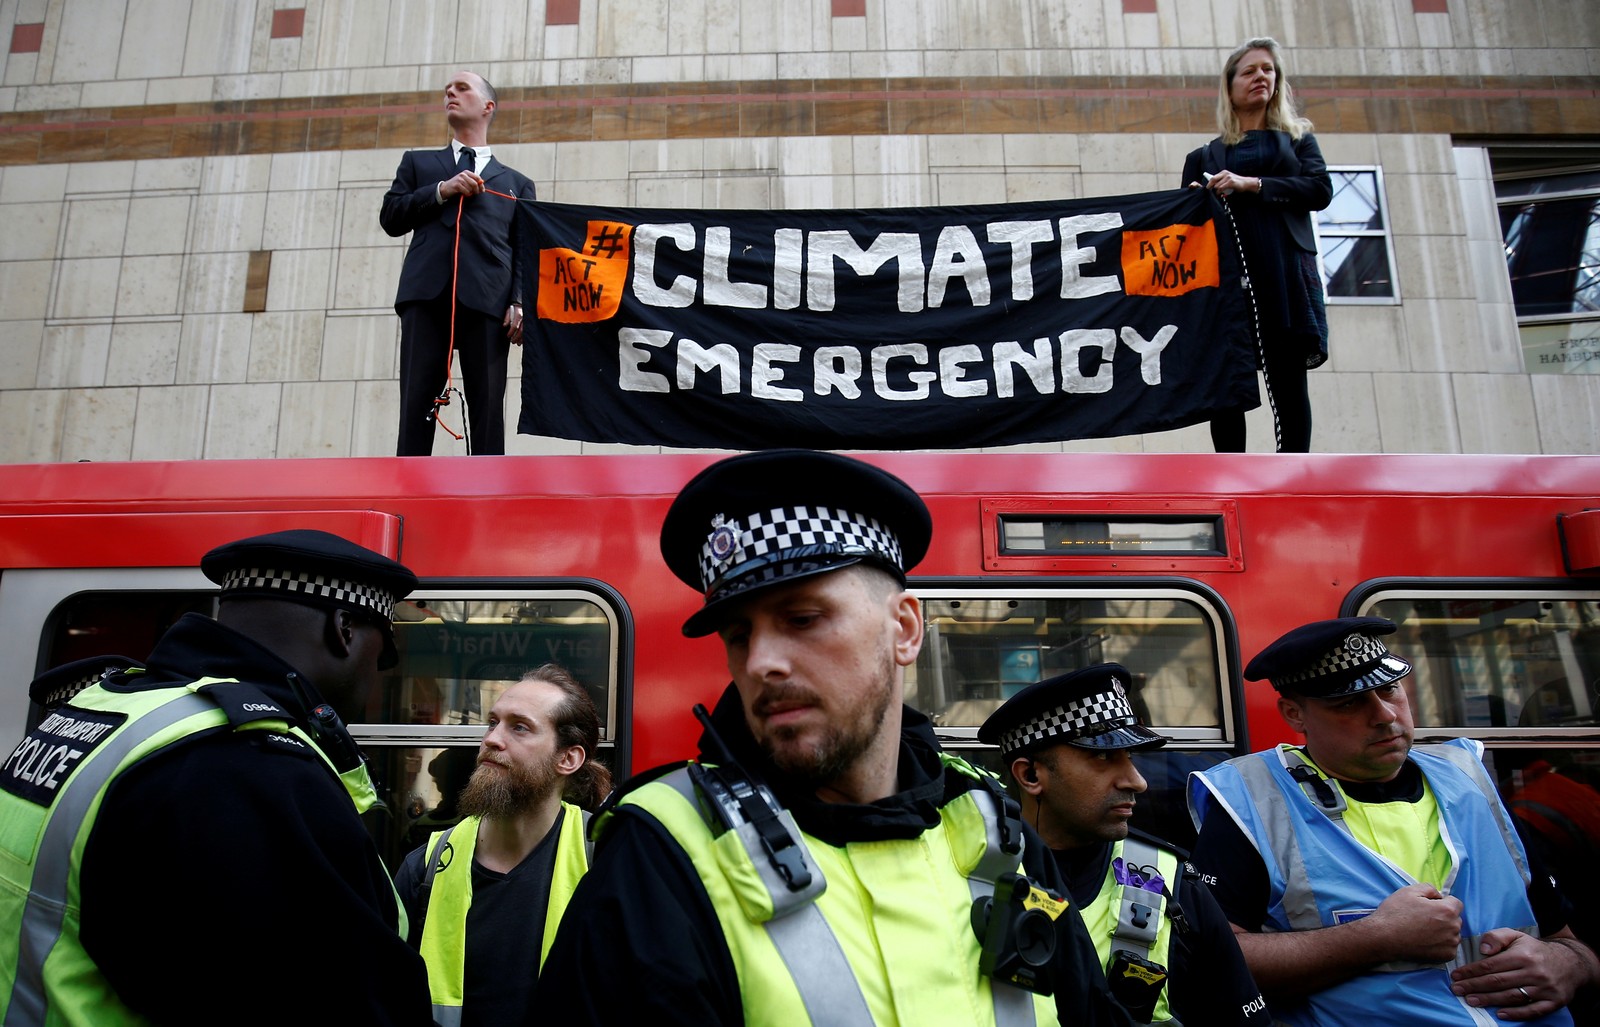 Ativistas fazem protesto contra as mudanças climáticas em uma estação de trem de Londres nesta quarta (17). — Foto: Henry Nicholls/Reuters